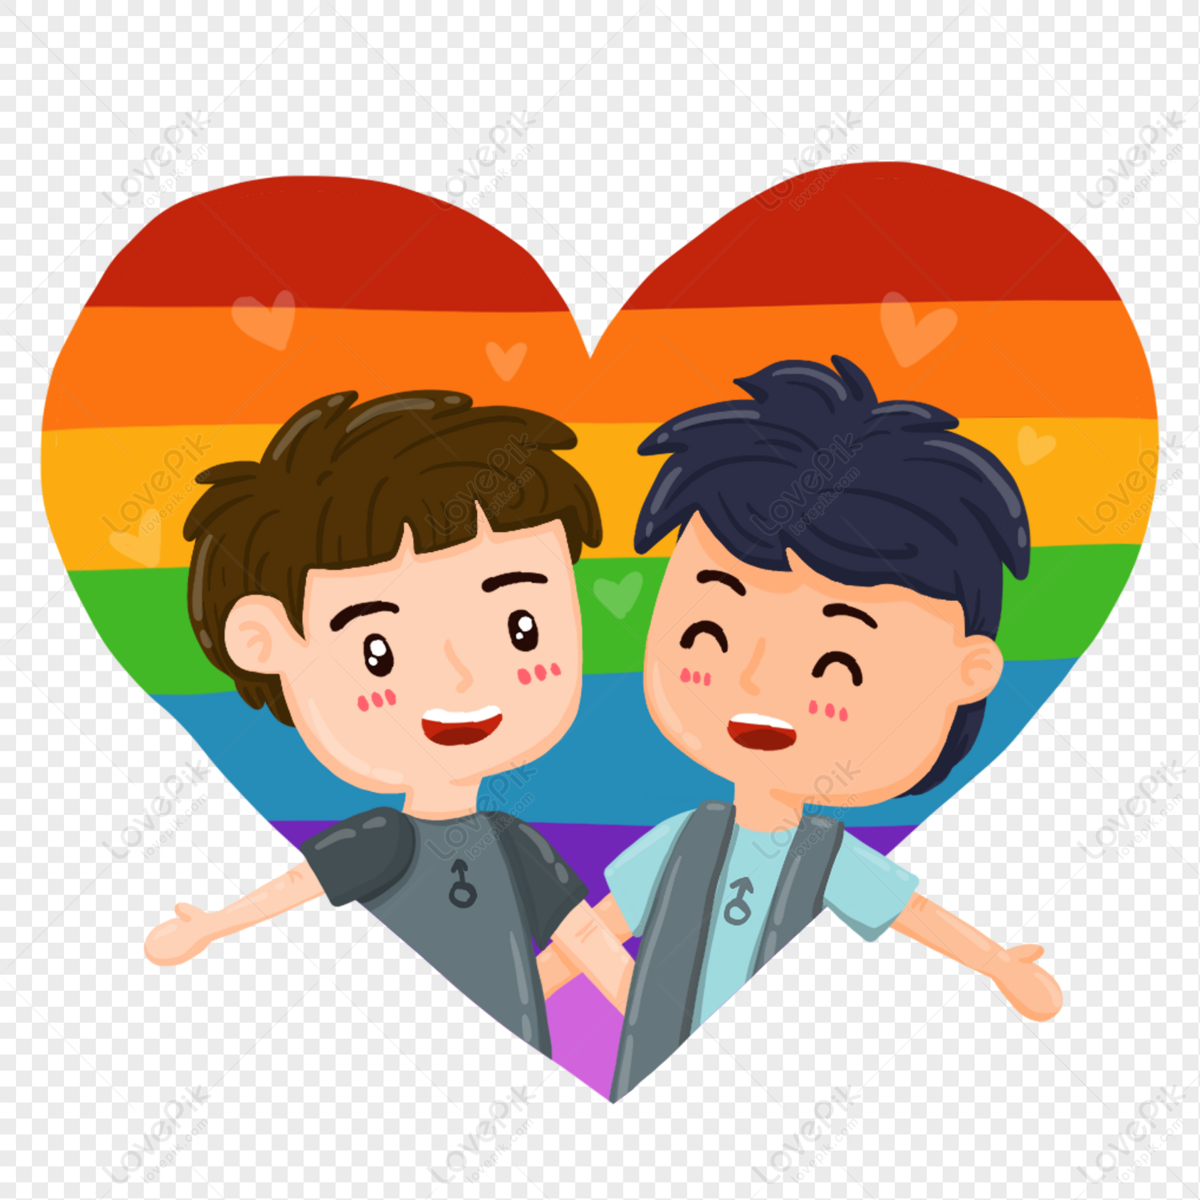 Mang đến cho bạn những bức ảnh đồng giới tình yêu đáng yêu và ý nghĩa. Miêu tả những khoảnh khắc ngọt ngào và đong đầy tình yêu giữa những cặp đôi đồng tính. Hãy để chúng tôi giúp bạn khám phá một thế giới yêu thương đồng giới.